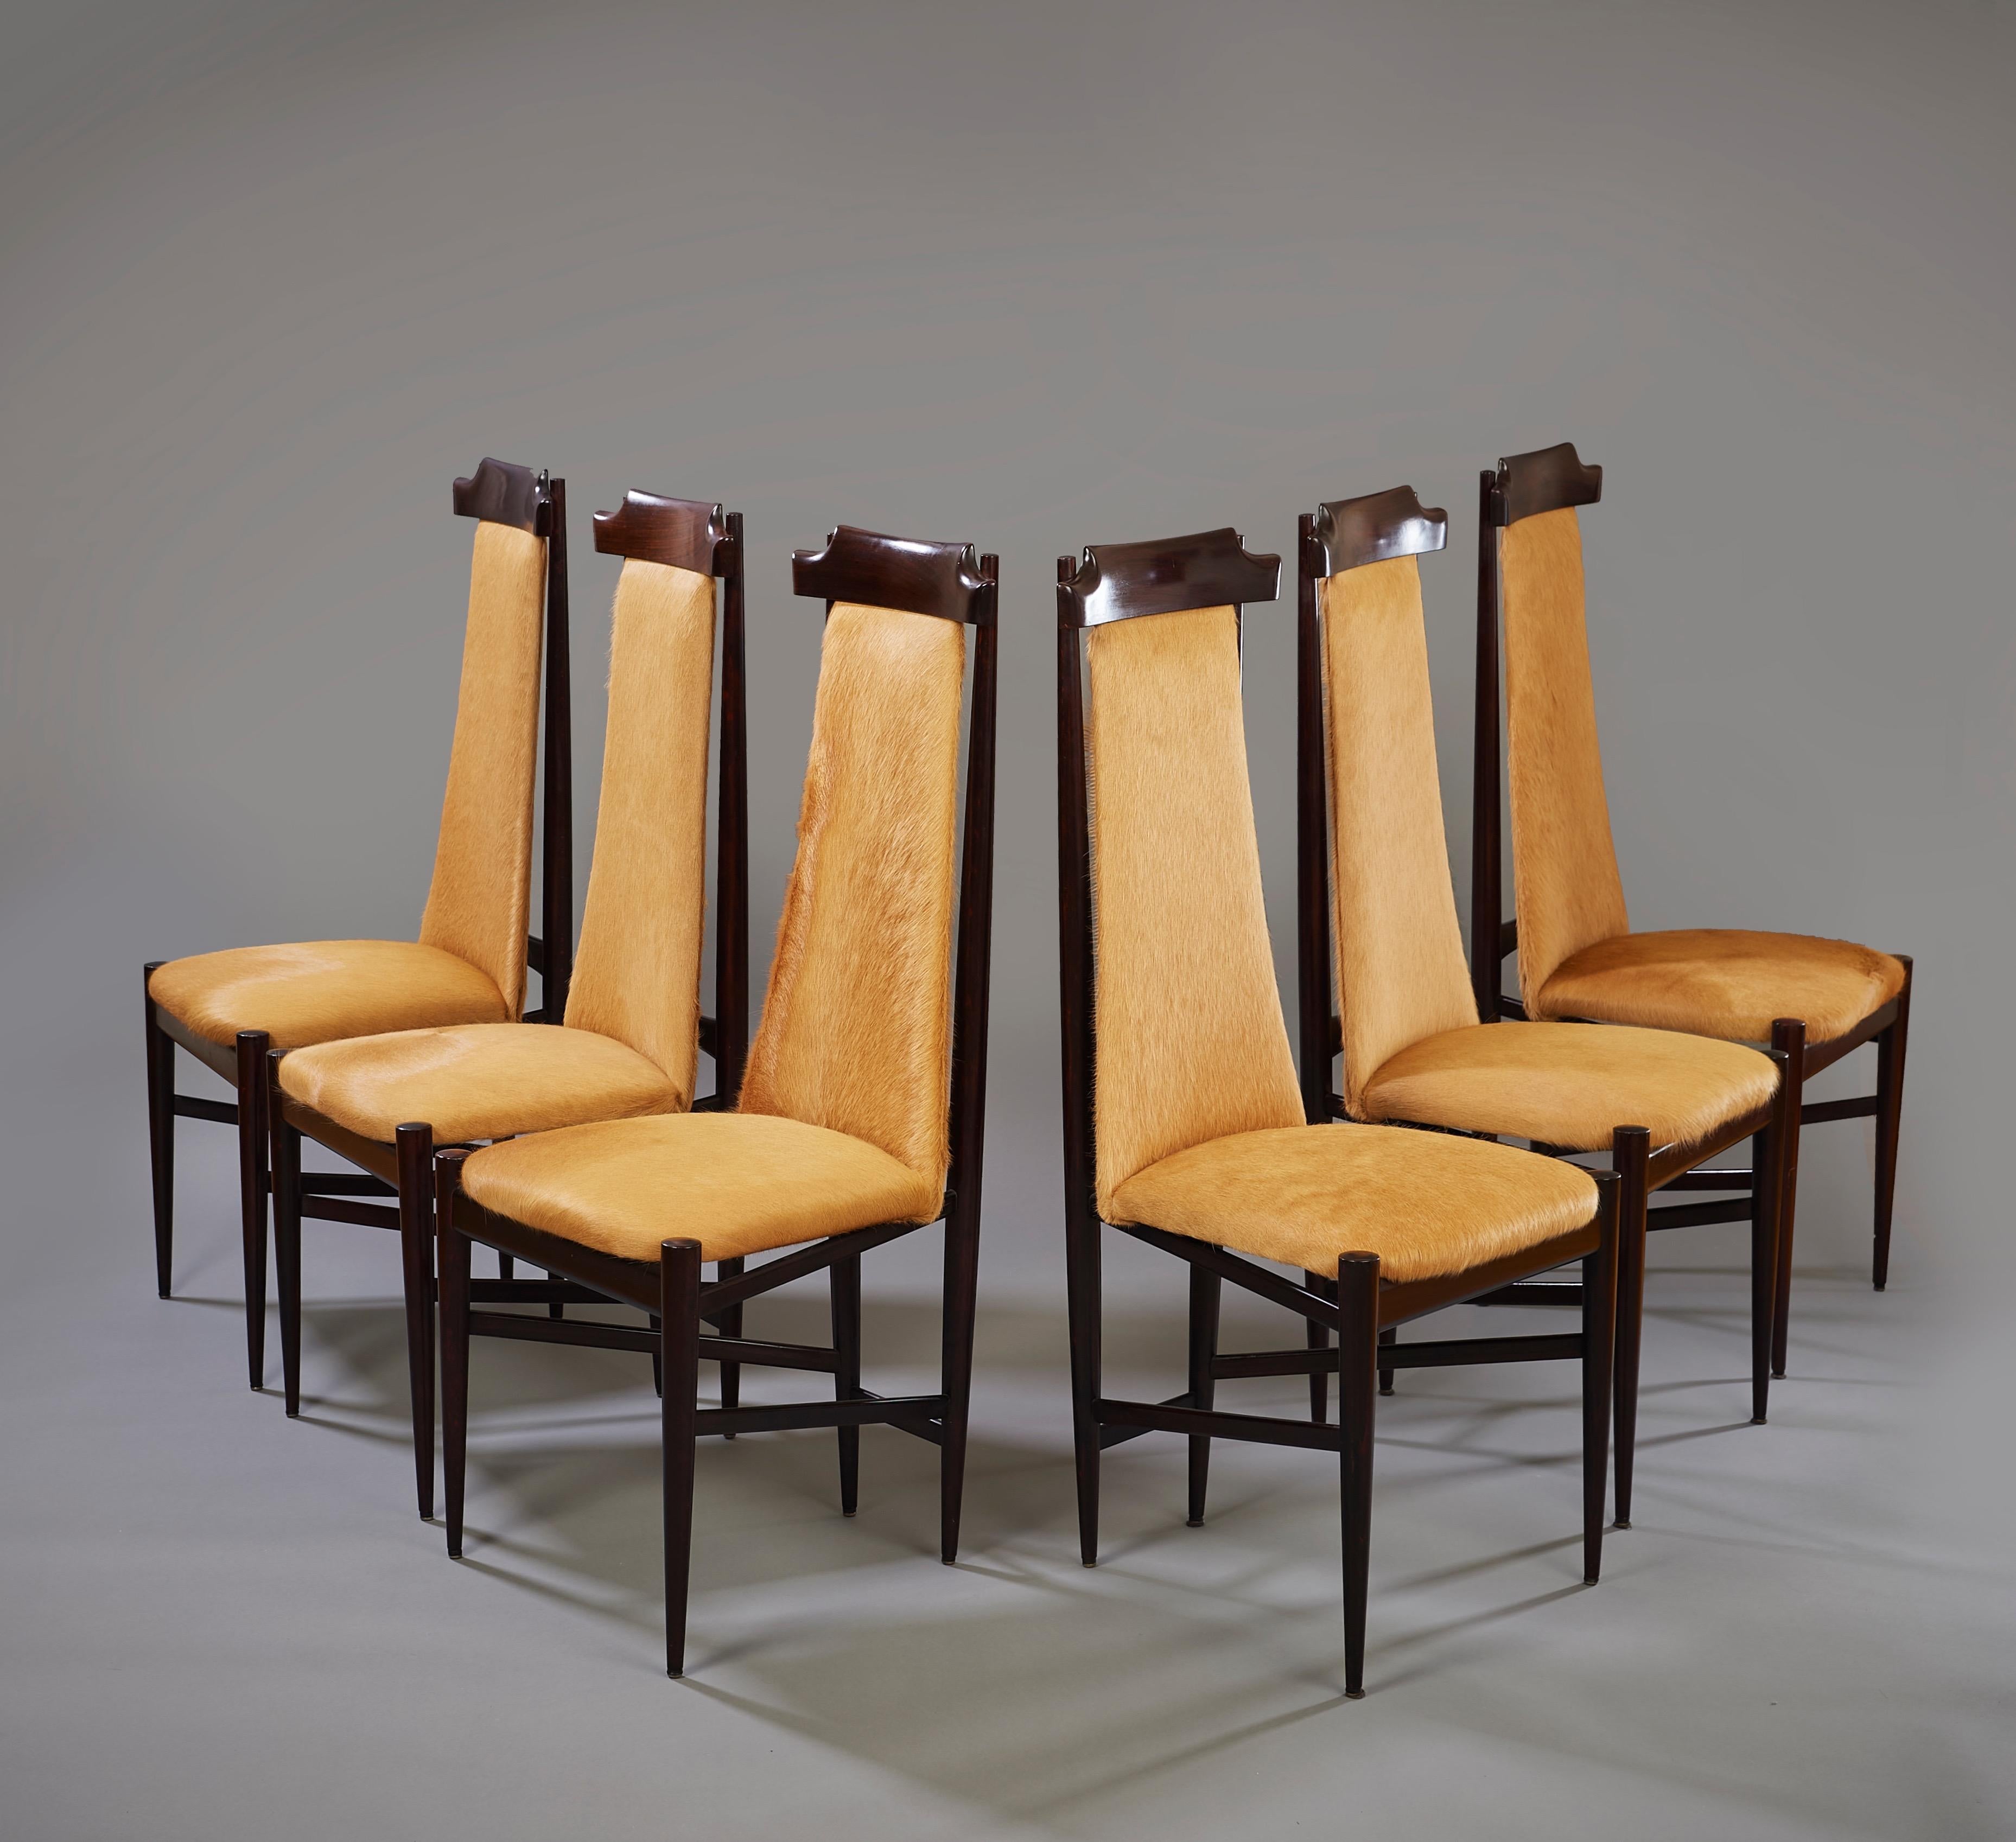 Sergio Rodrigues (1927-2014)

Ein auffälliges Set von sechs modernistischen Esszimmerstühlen des Carioca-Designpioniers Sérgio Rodrigues aus Hartholz, gepolstert mit ungehobeltem karamellfarbenem Rindsleder. Die Stühle stellen eine einzigartige